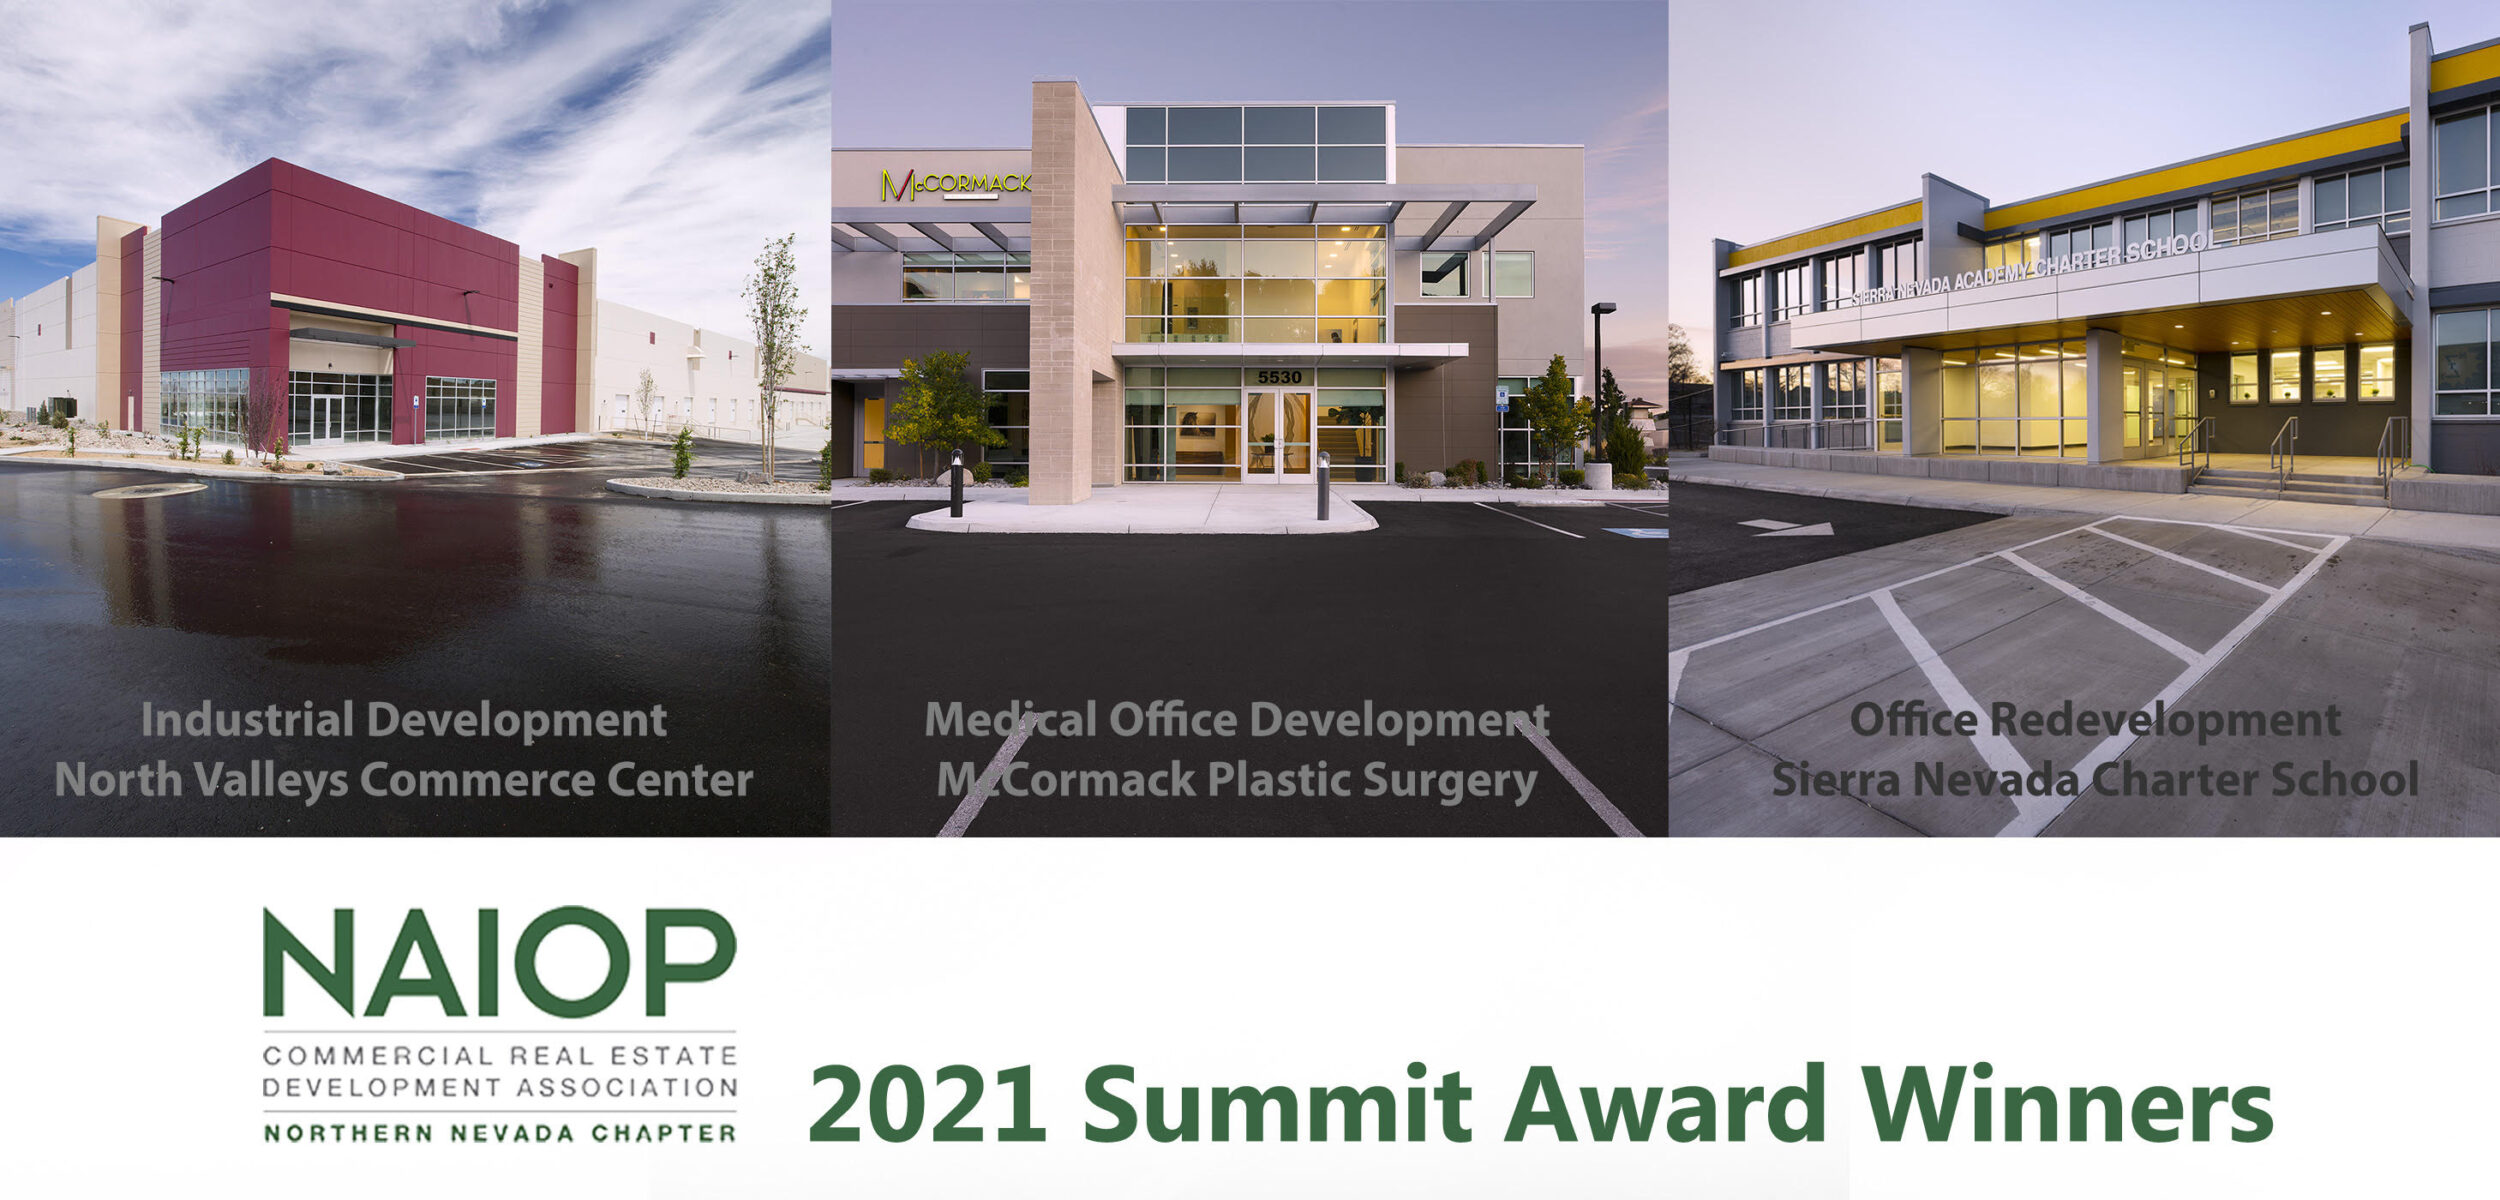 NAIOP 2021 Summit Award